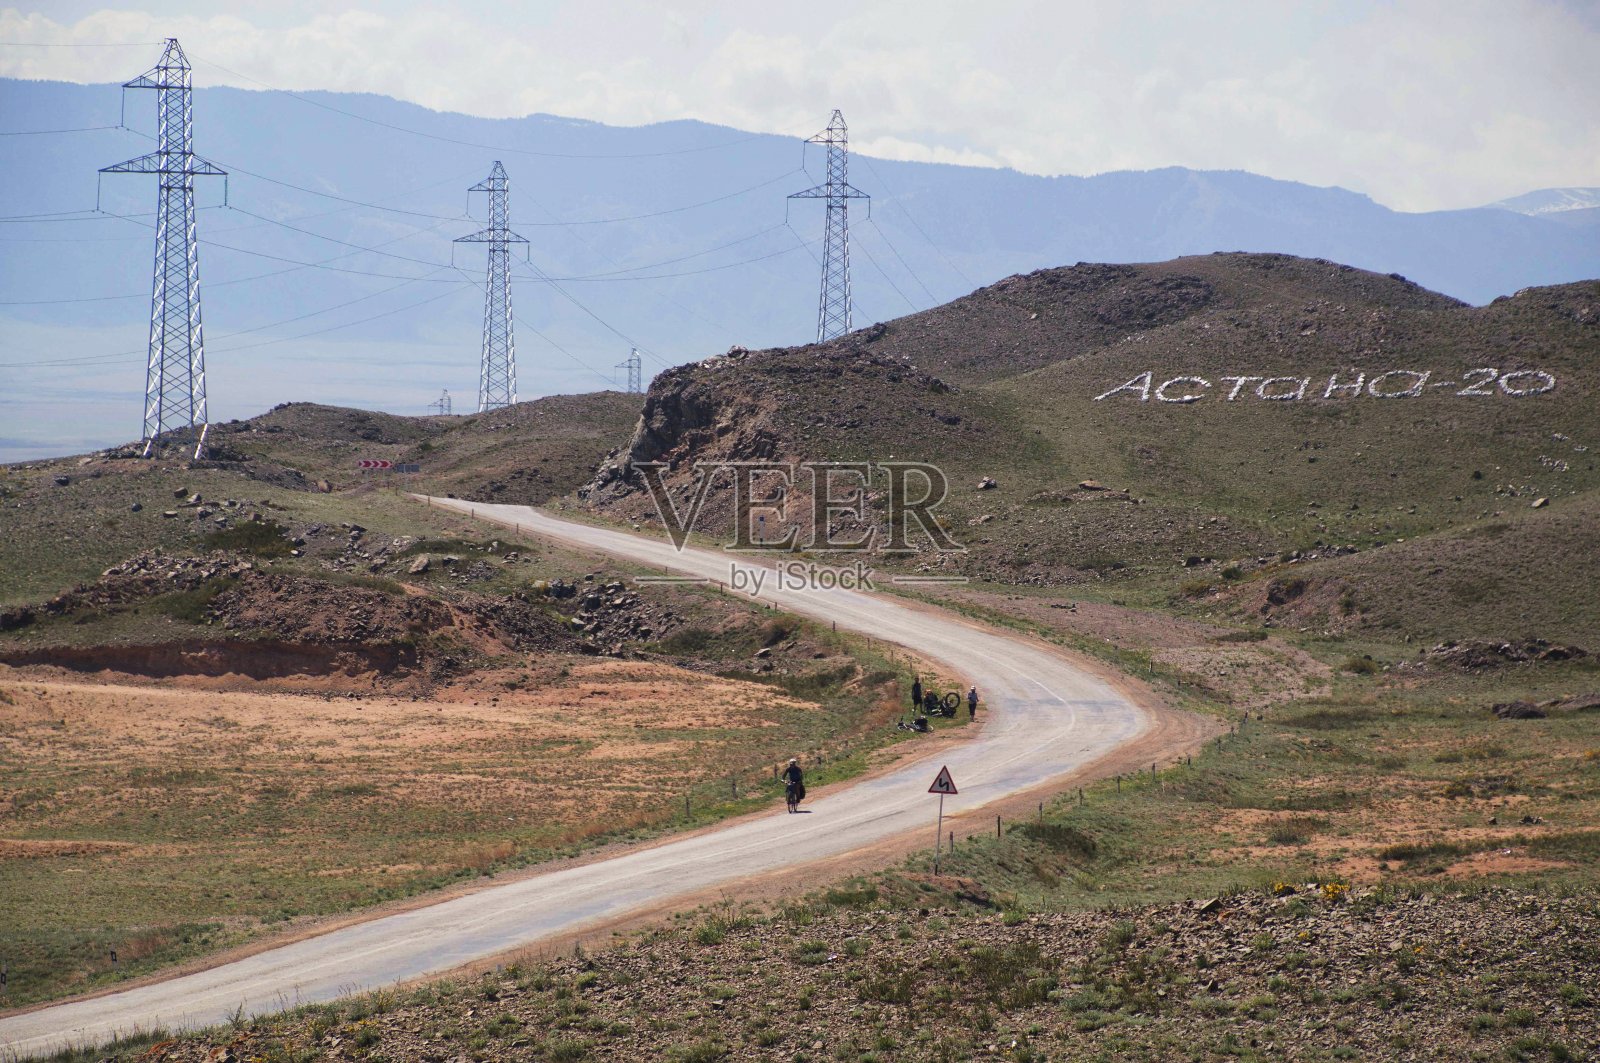 两名骑自行车的人在哈萨克斯坦南部的高海拔公路上照片摄影图片